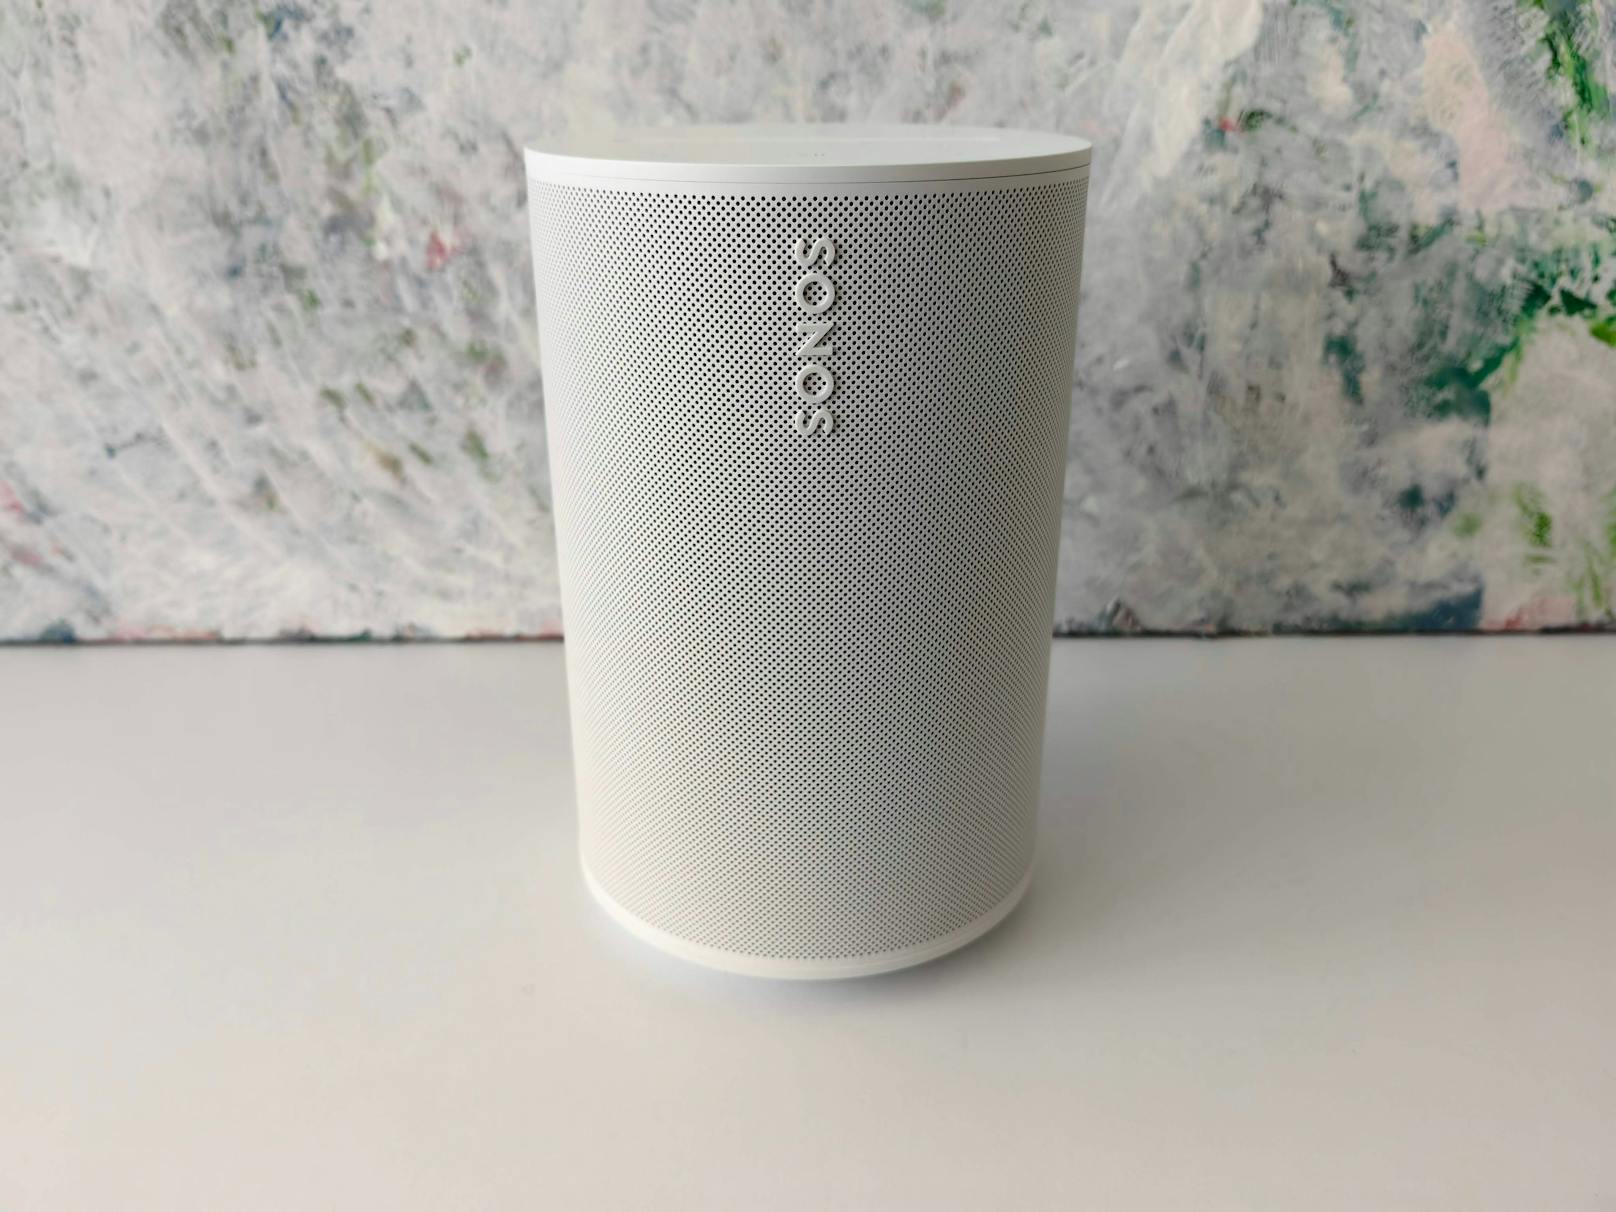 Der Sonos Era 100 kann jetzt Stereo-Sound, Bluetooth-Verbindungen und ein noch klareres Klangbild. Er ist damit dem Sonos One überlegen.